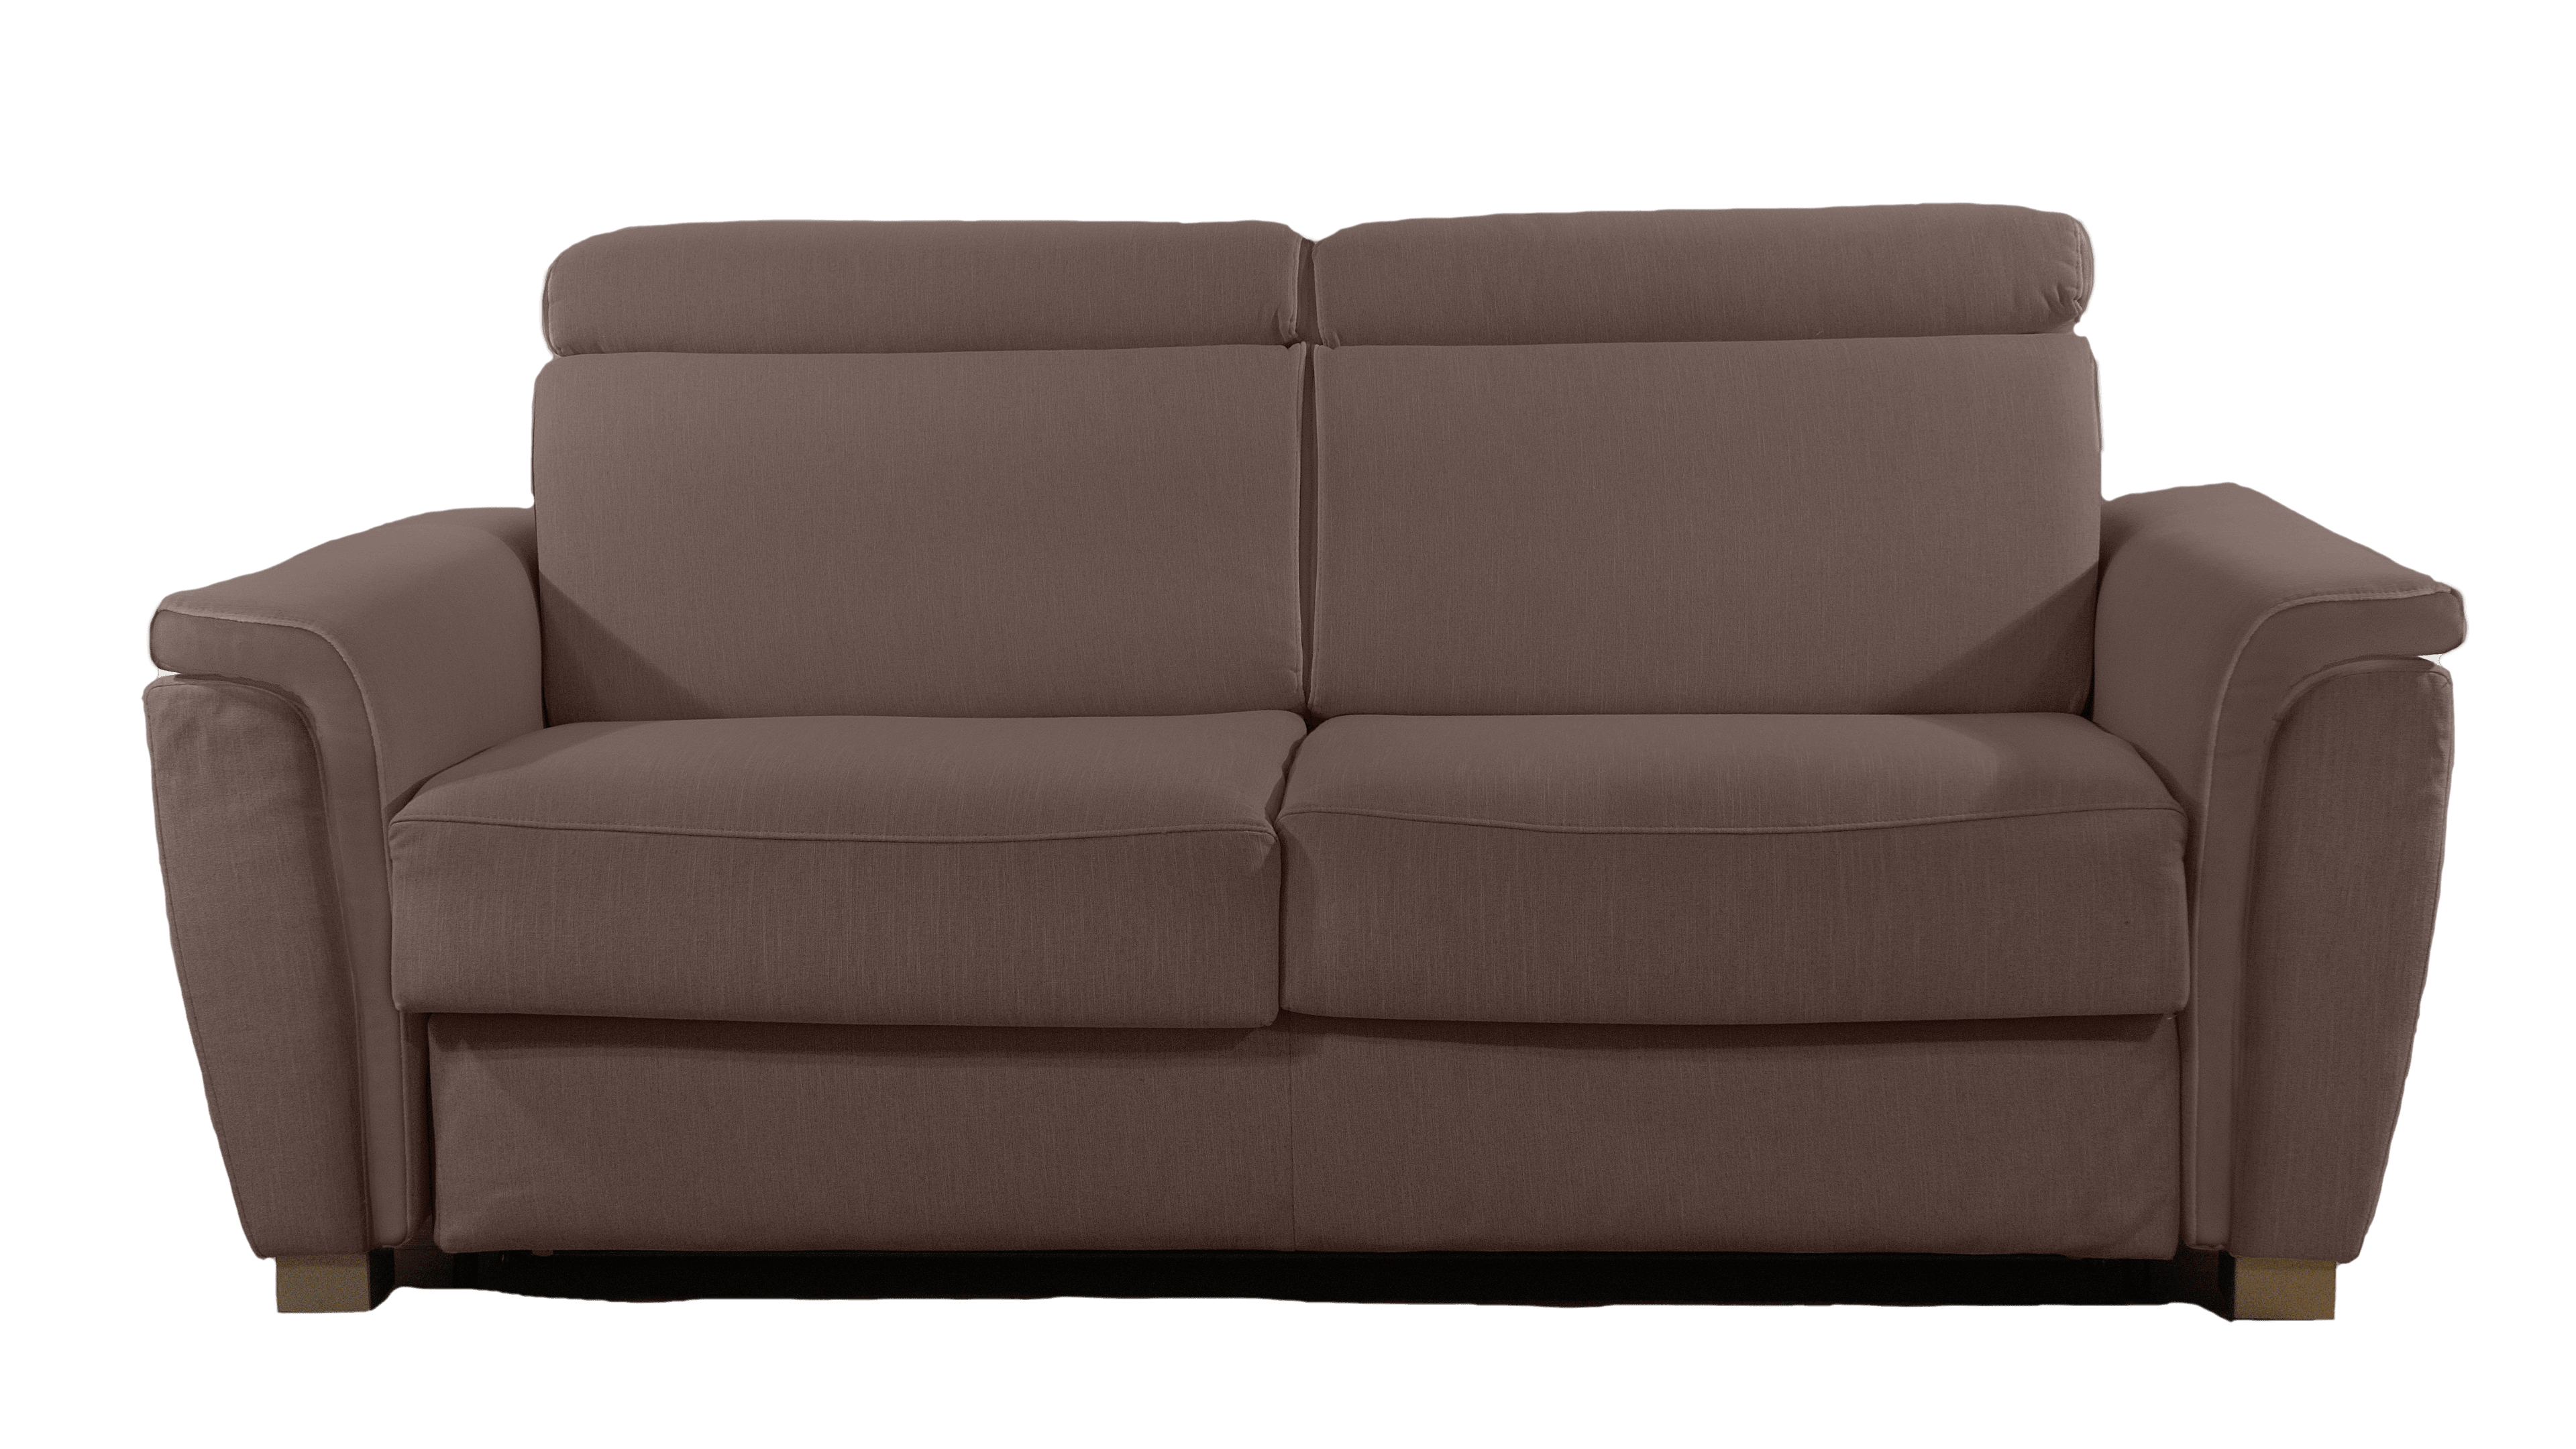 Scopri la comodità del divano letto con materasso alto